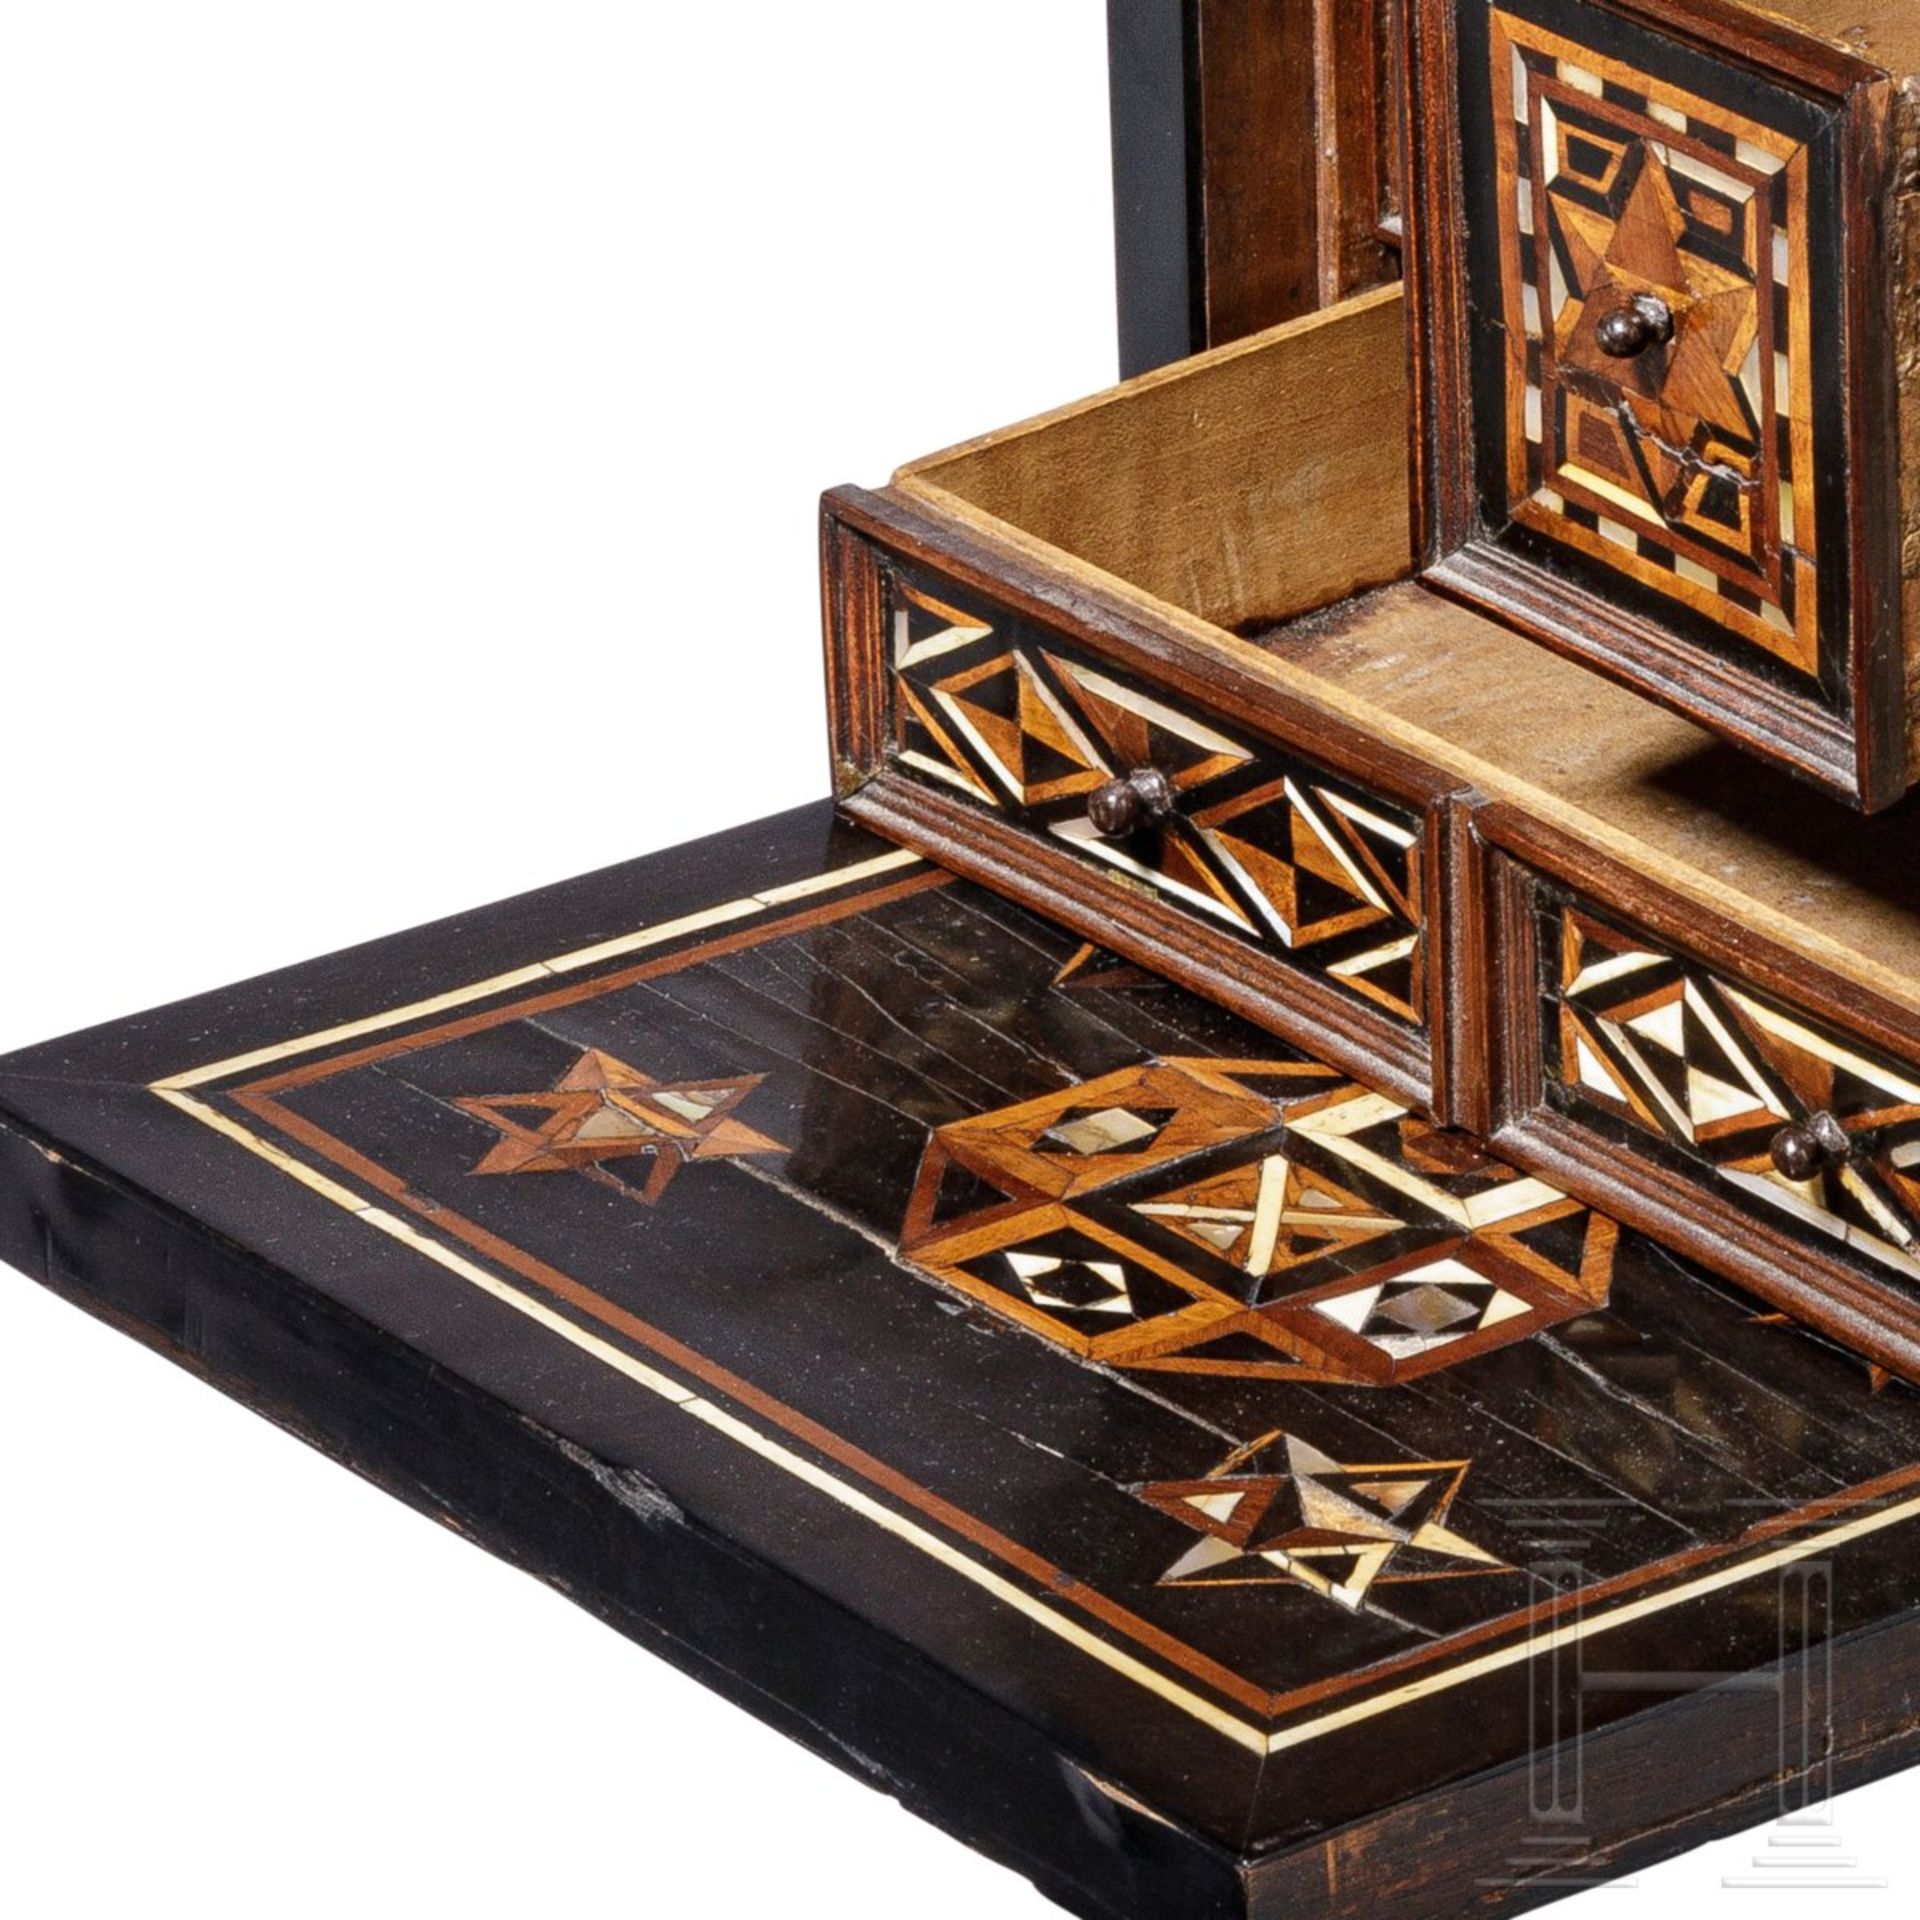 Ebenholzfurniertes Kabinettkästchen mit geometrischem Dekor, Nürnberg, um 1600 - Bild 6 aus 7